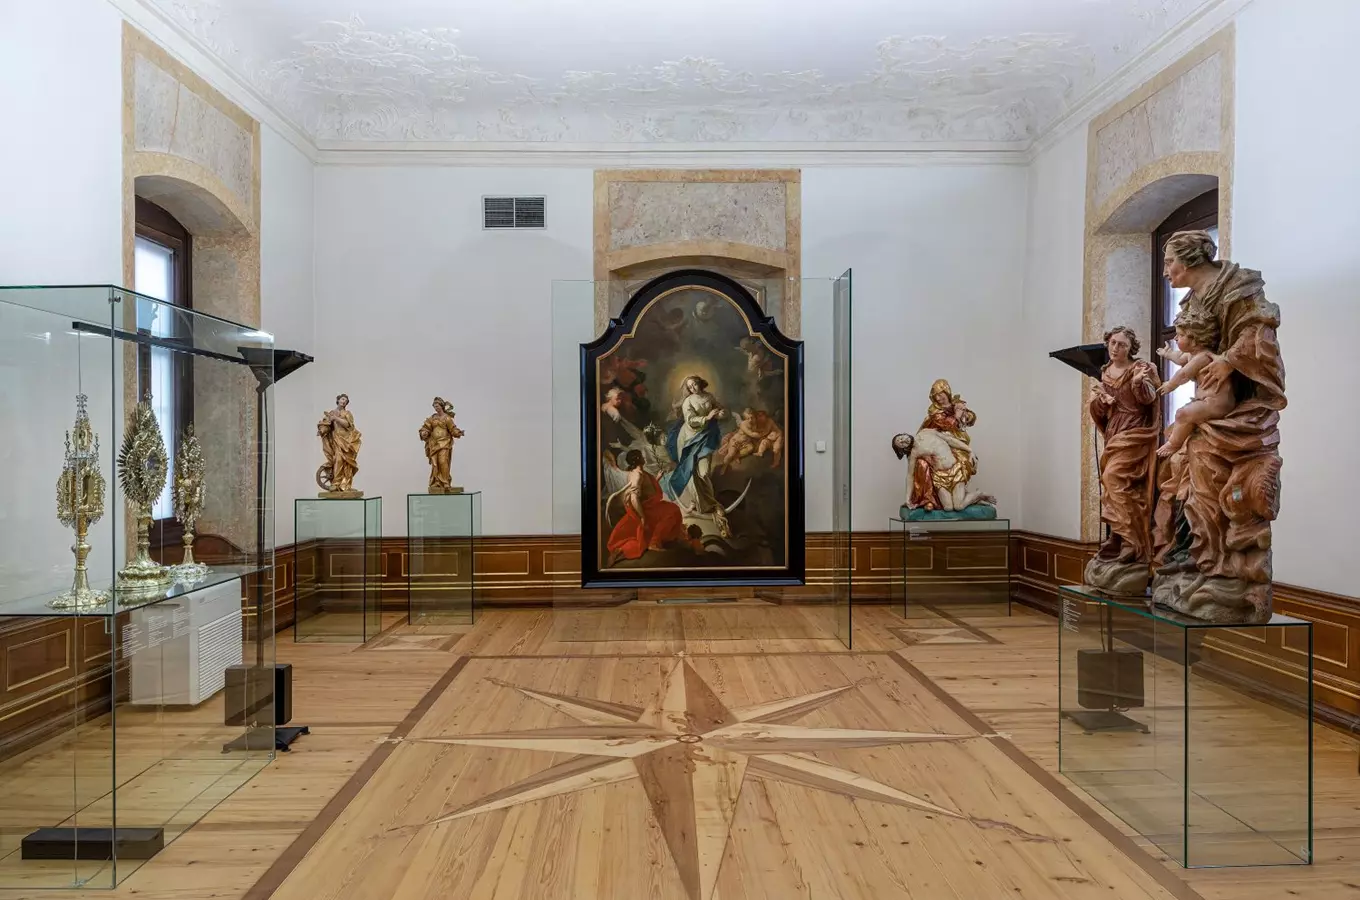 Arcidiecézní muzeum v Olomouci se po dlouhé rekonstrukci znovu otevře